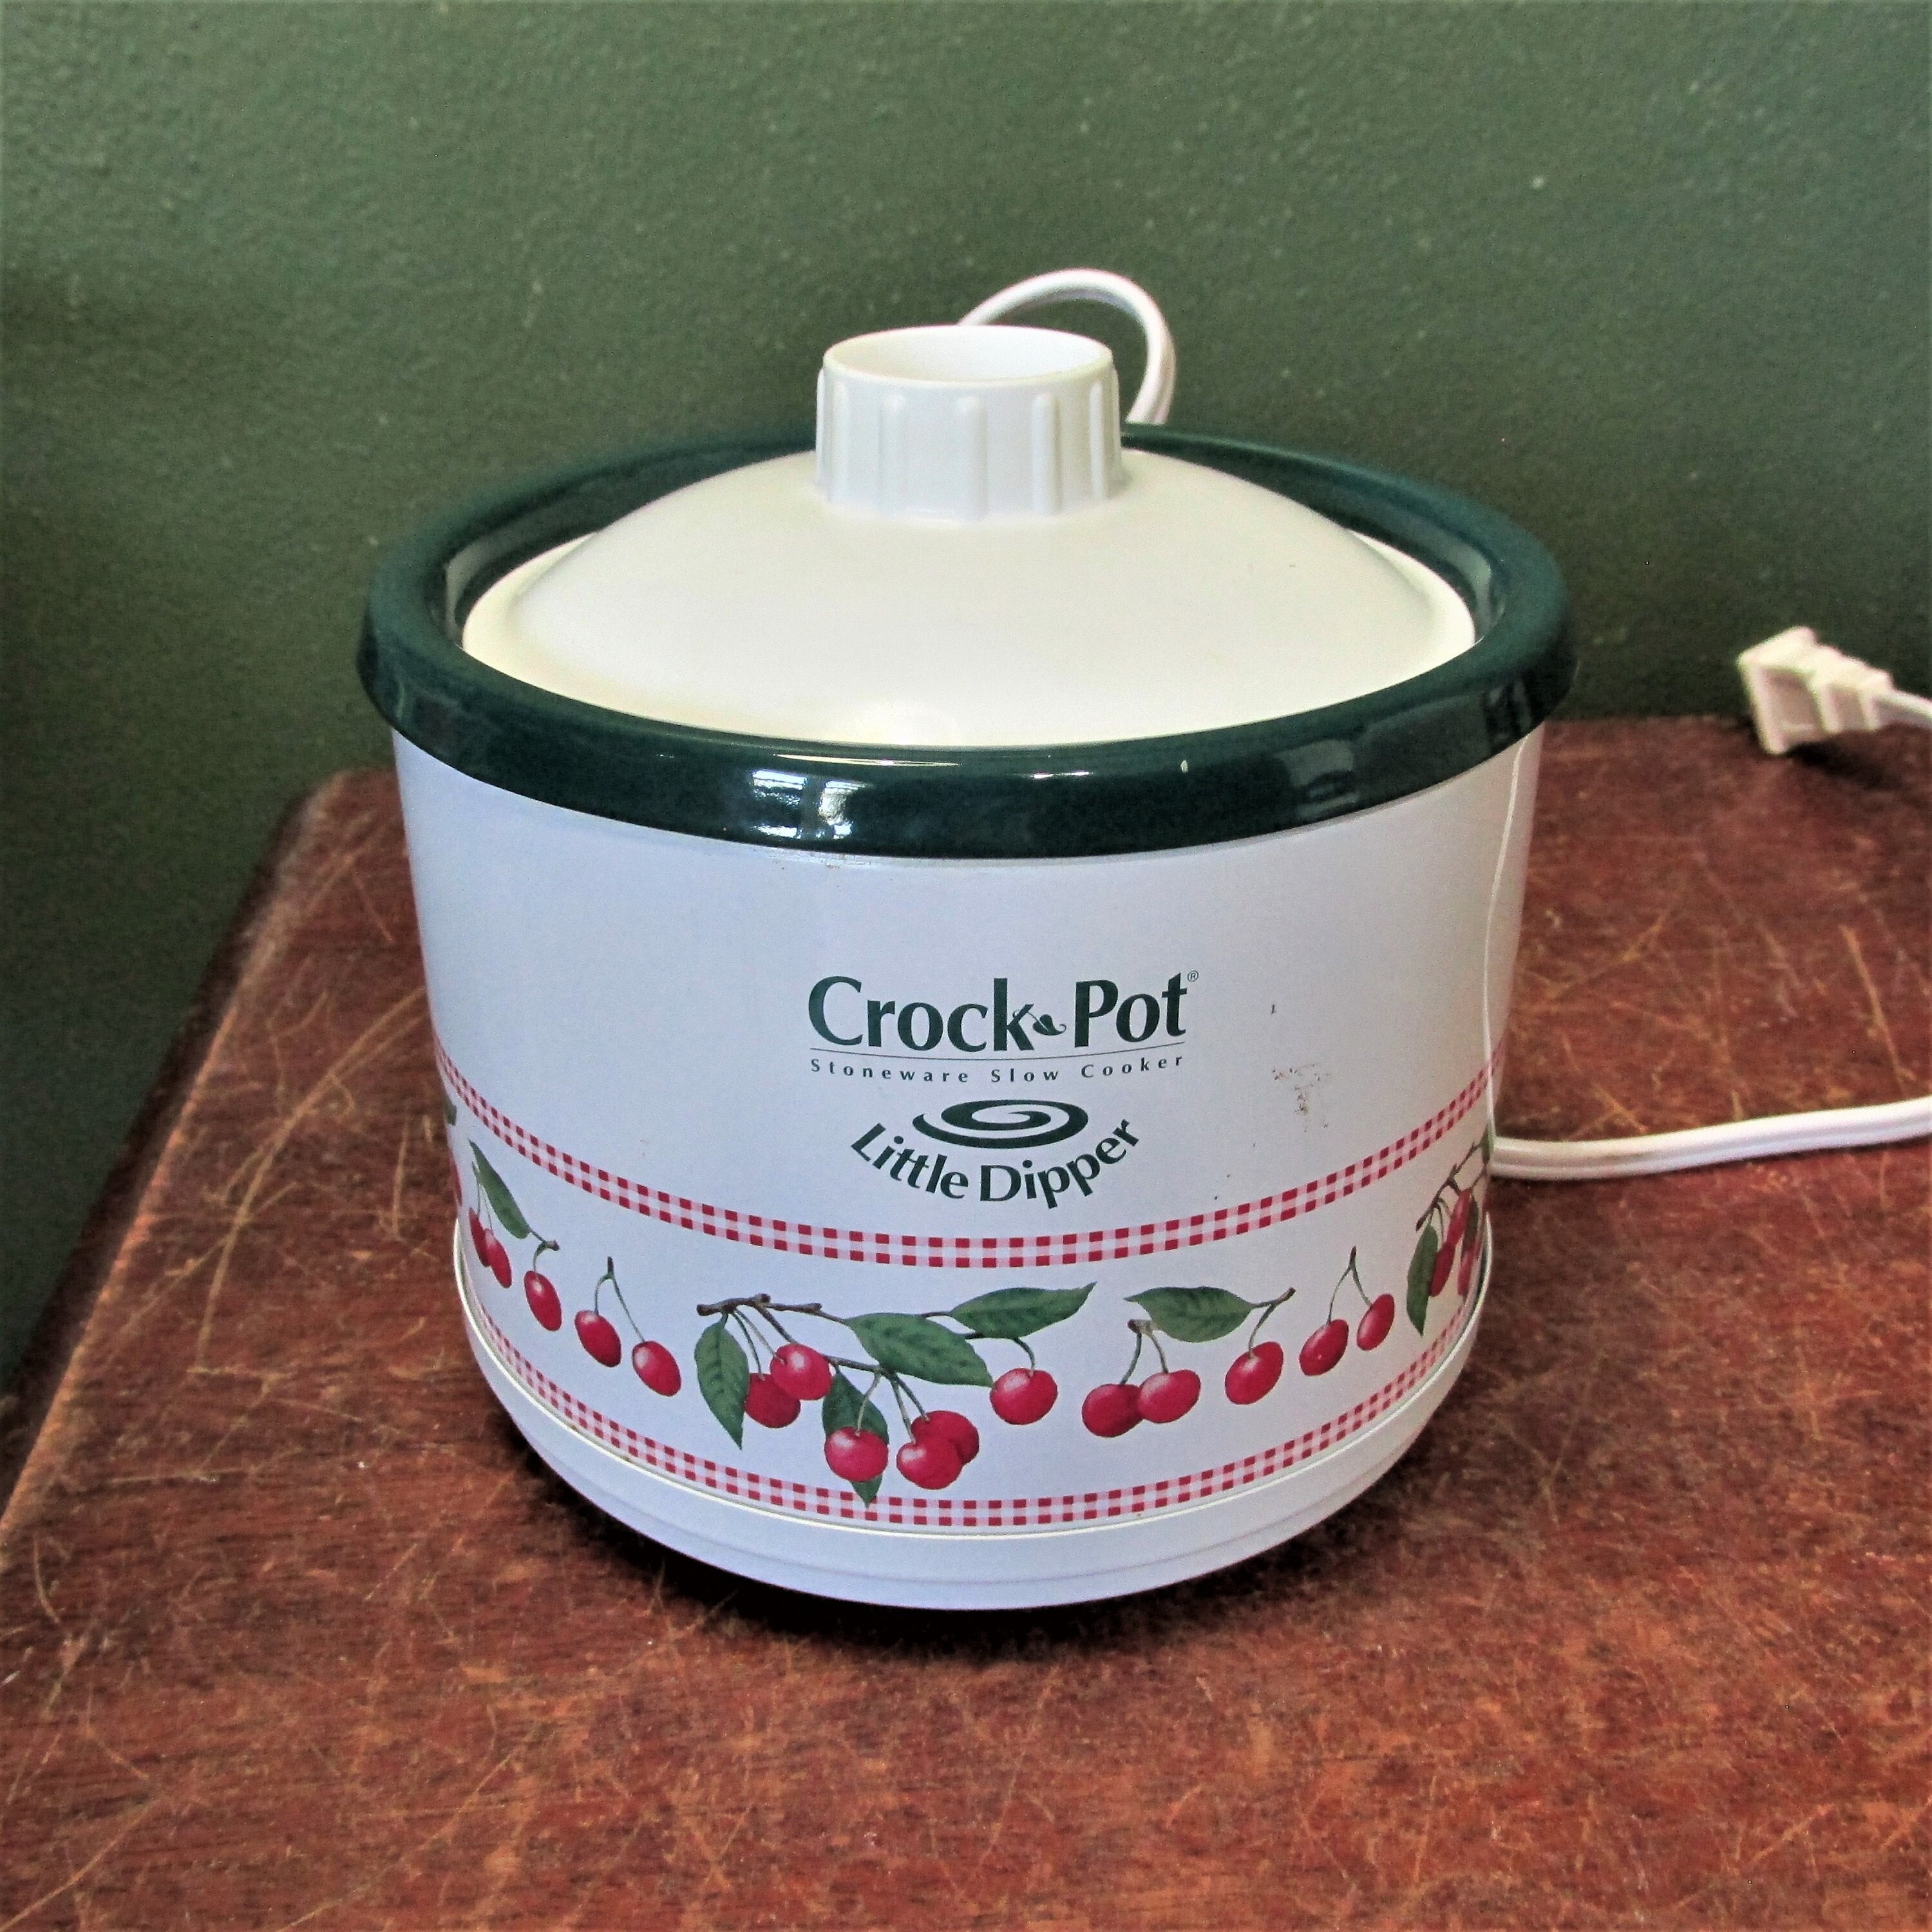 Vintage Electric Copper Potpourri Pot, Vintage Deodorizer Pot